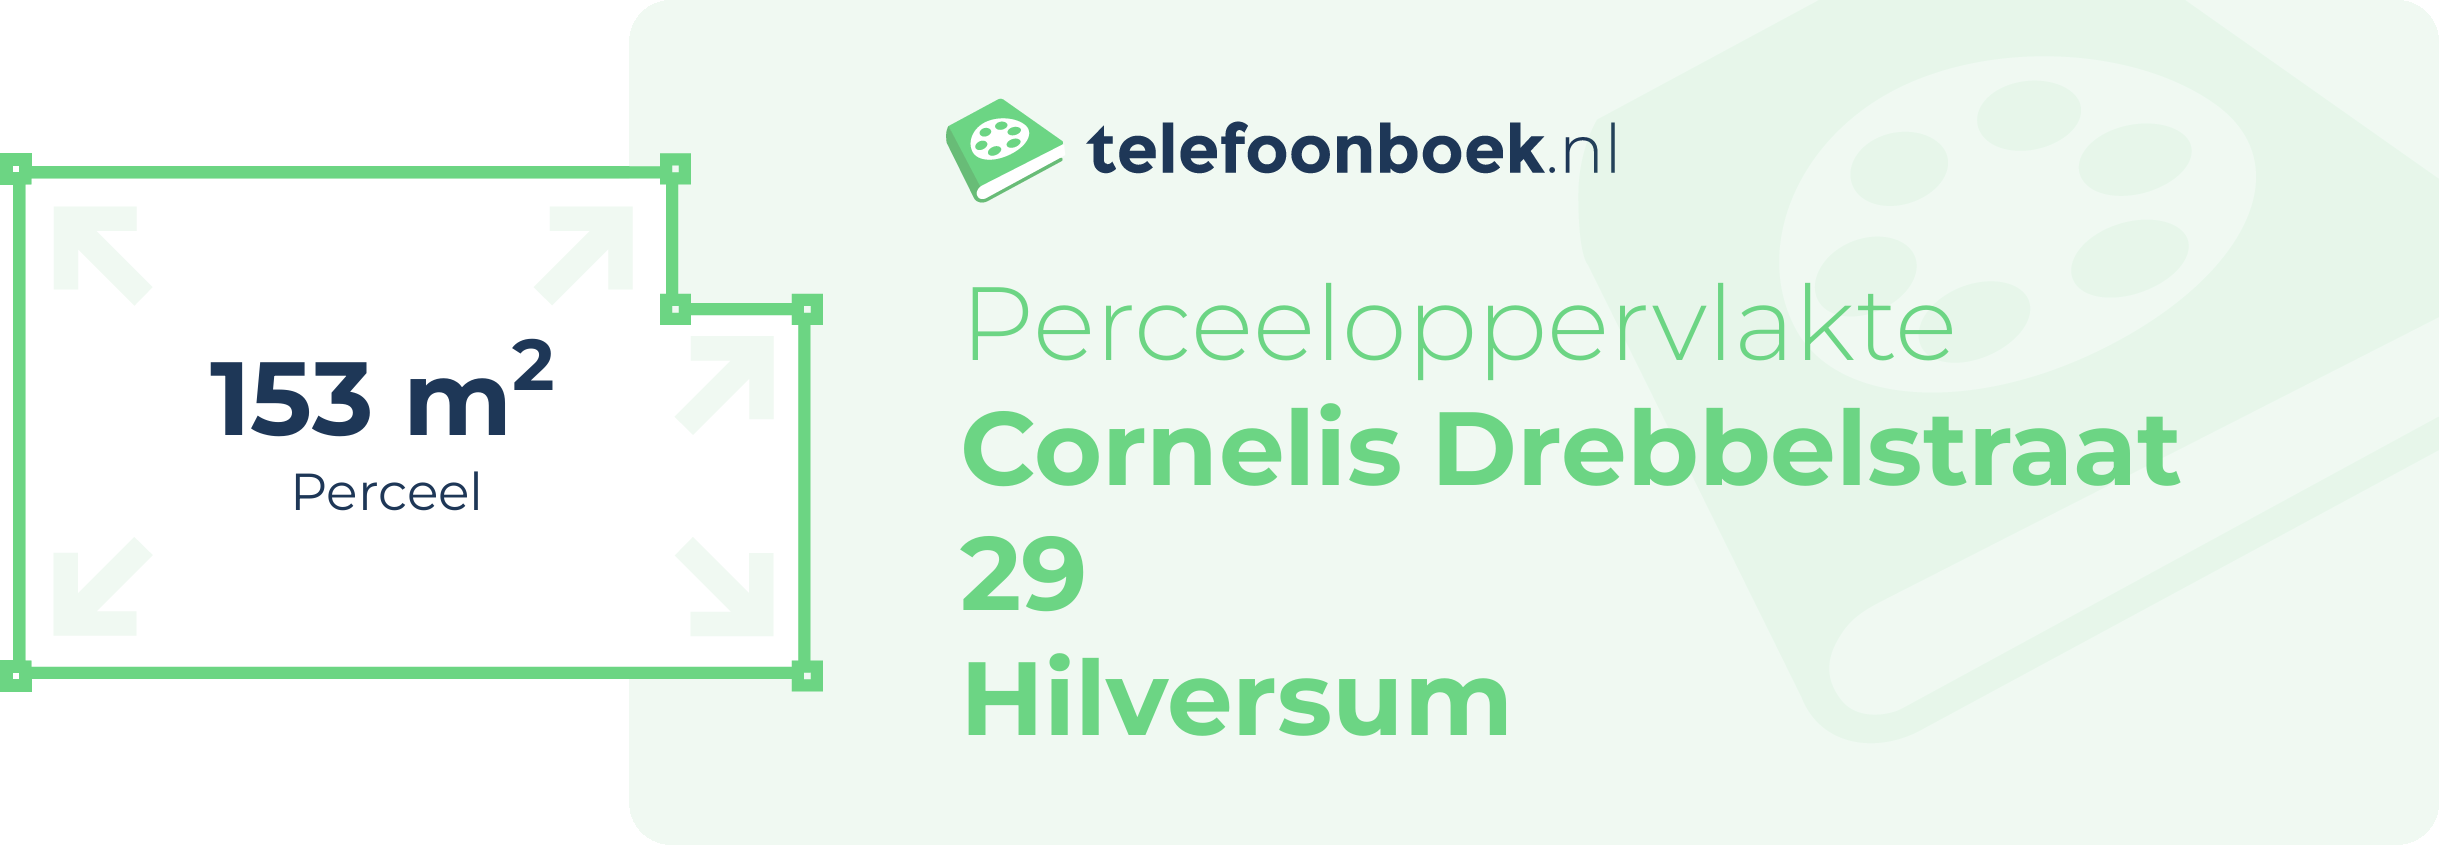 Perceeloppervlakte Cornelis Drebbelstraat 29 Hilversum